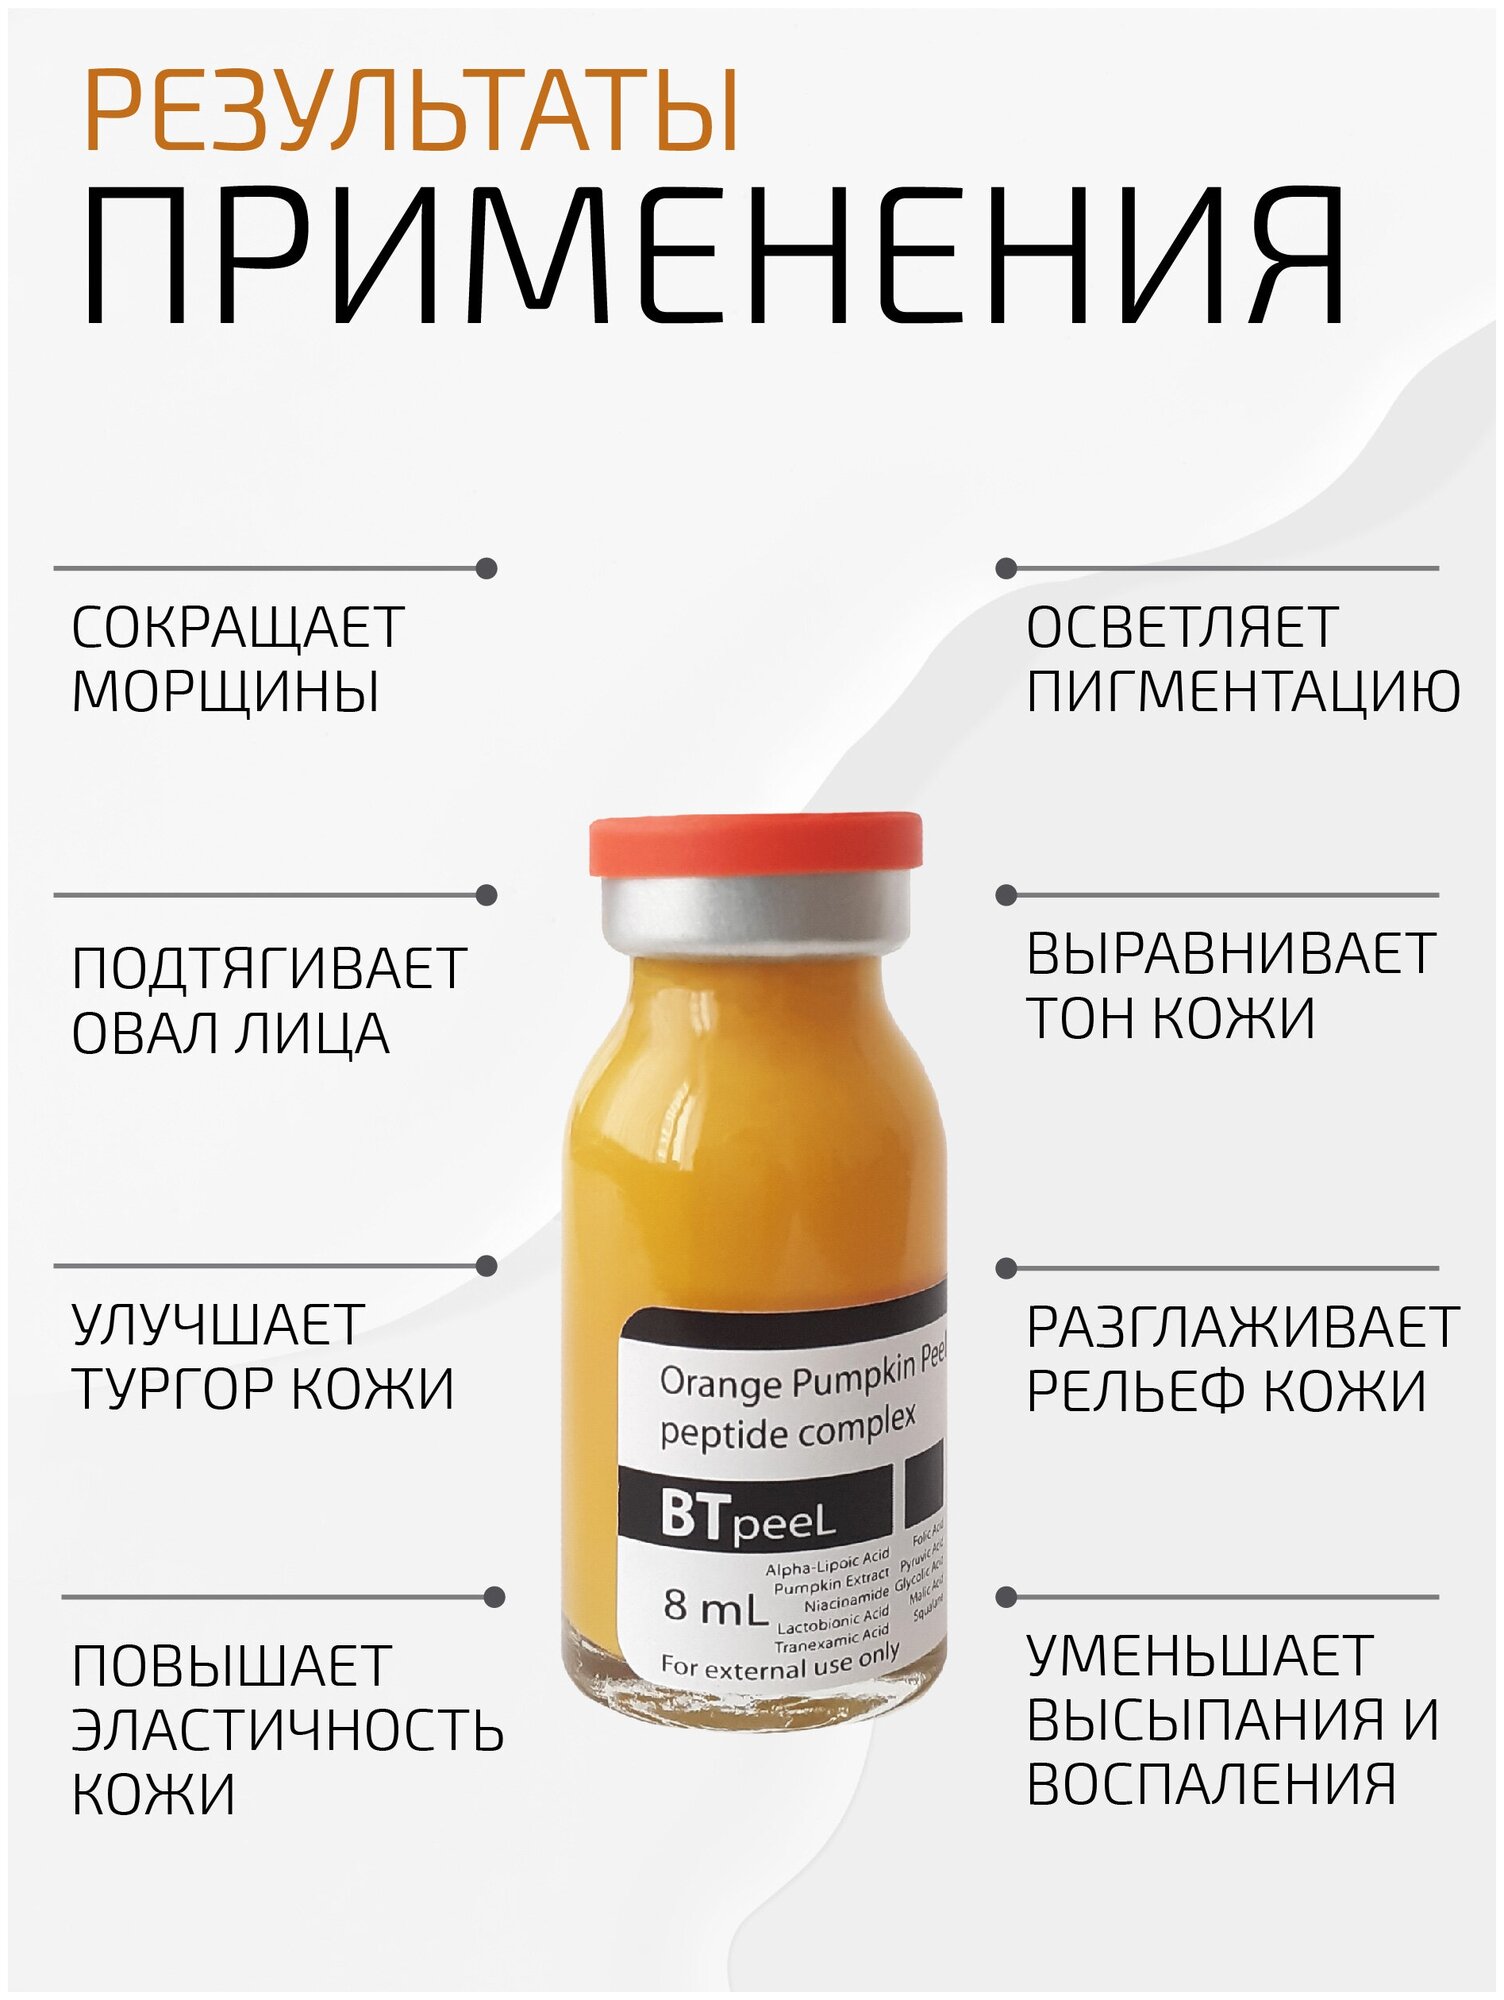 Оранжевый пилинг с лактобионовой, транексамовой кислотой, экстрактом тыквы и пептидным комплексом BTpeel